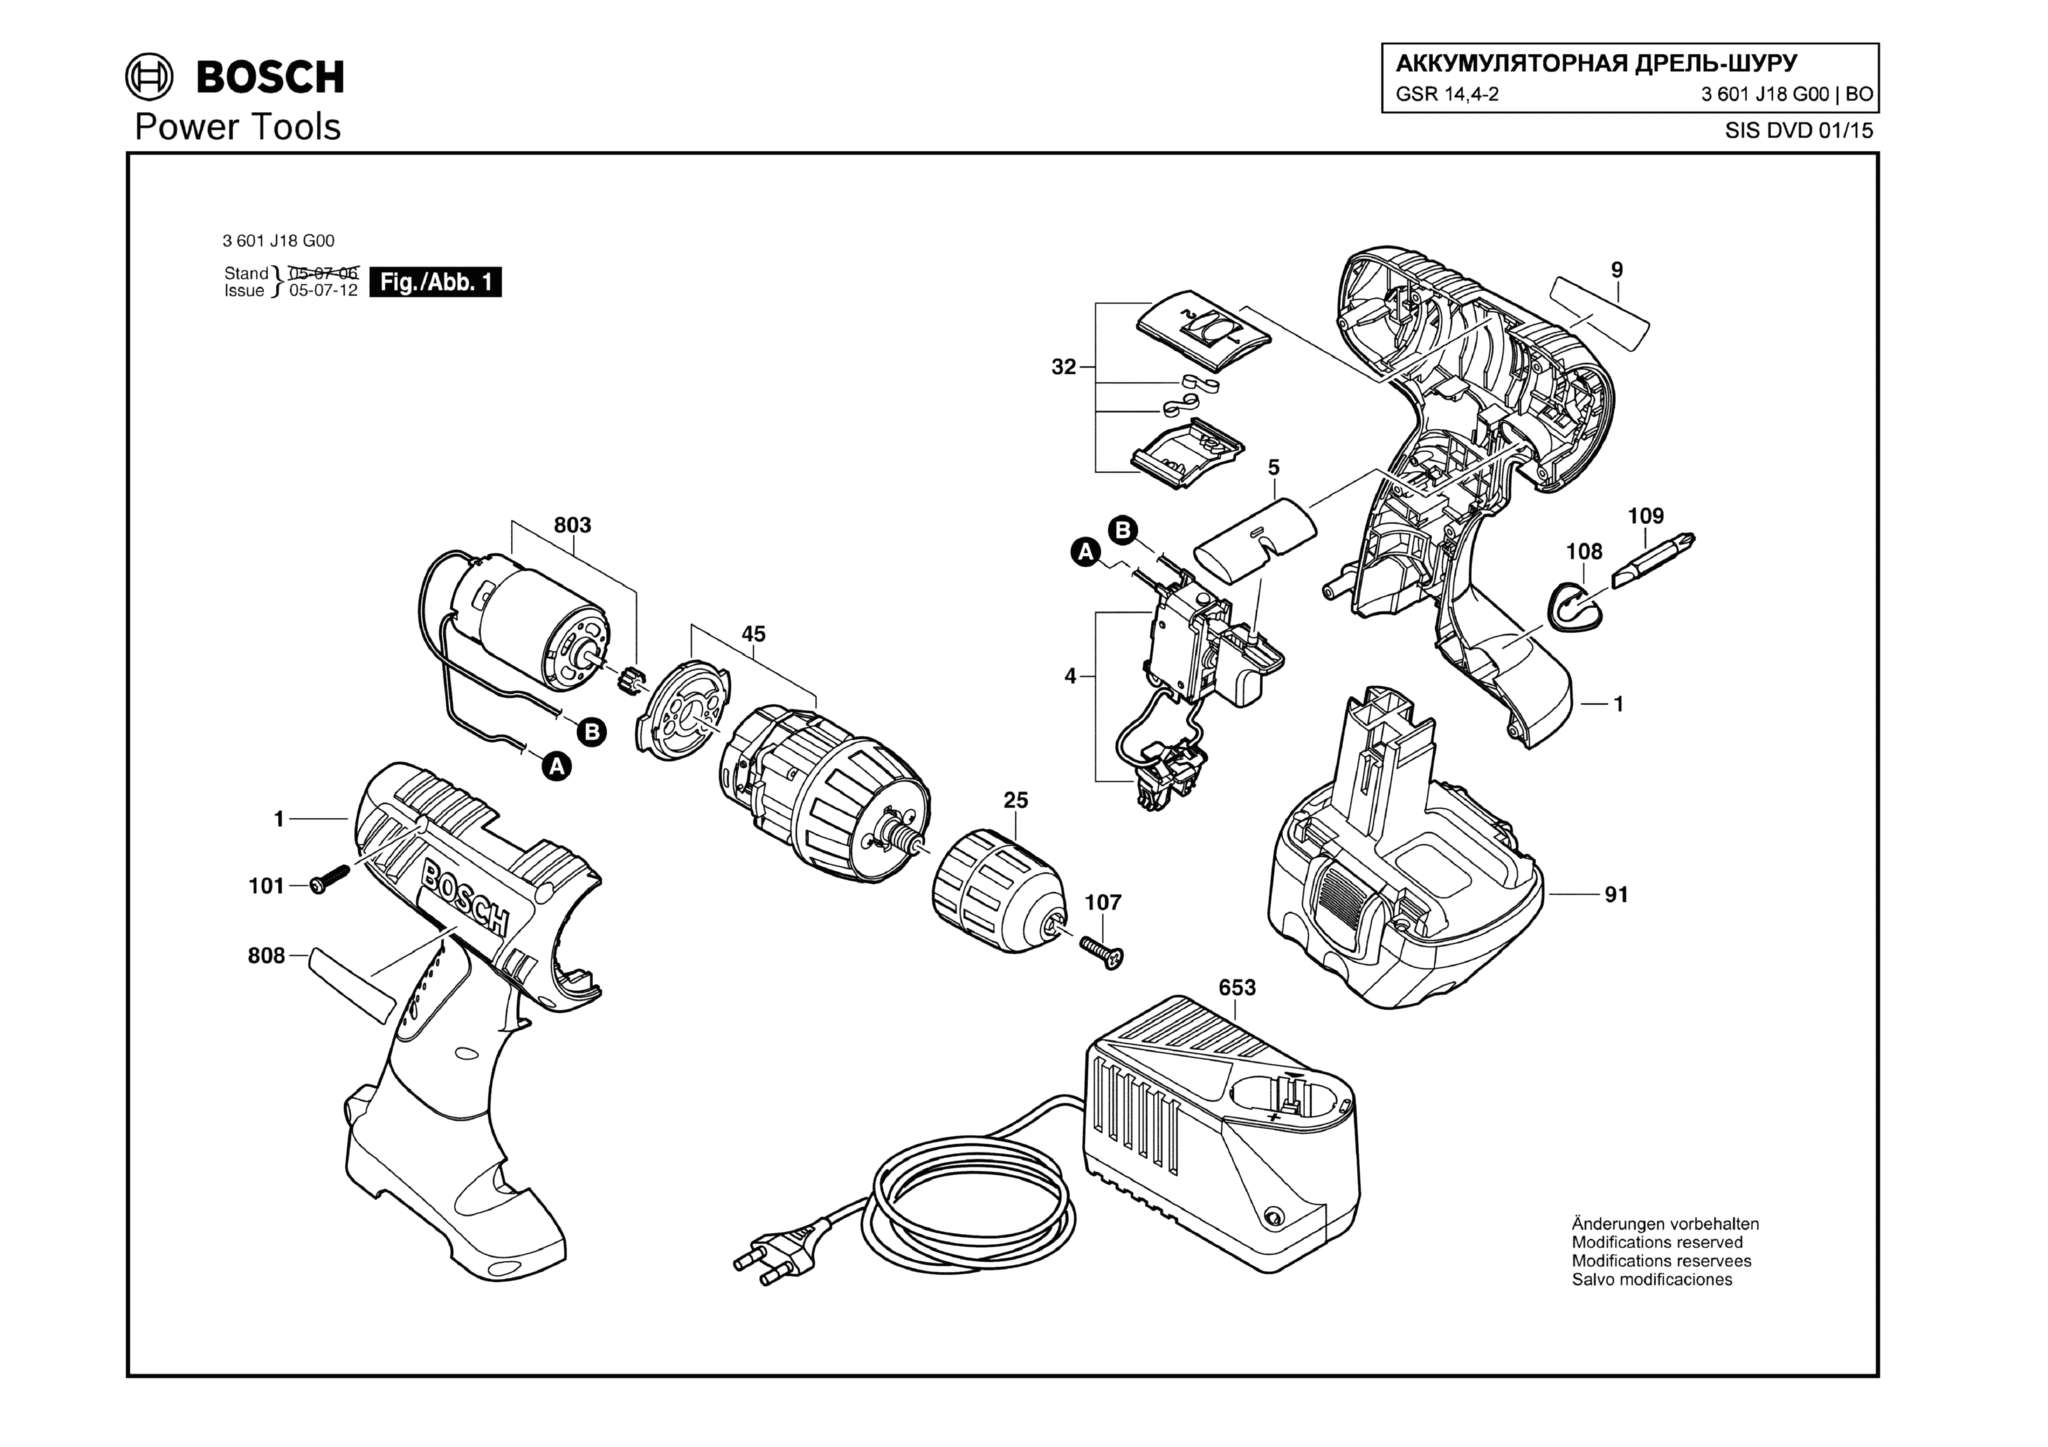 Запчасти, схема и деталировка Bosch GSR 14,4-2 (ТИП 3601J18G00)